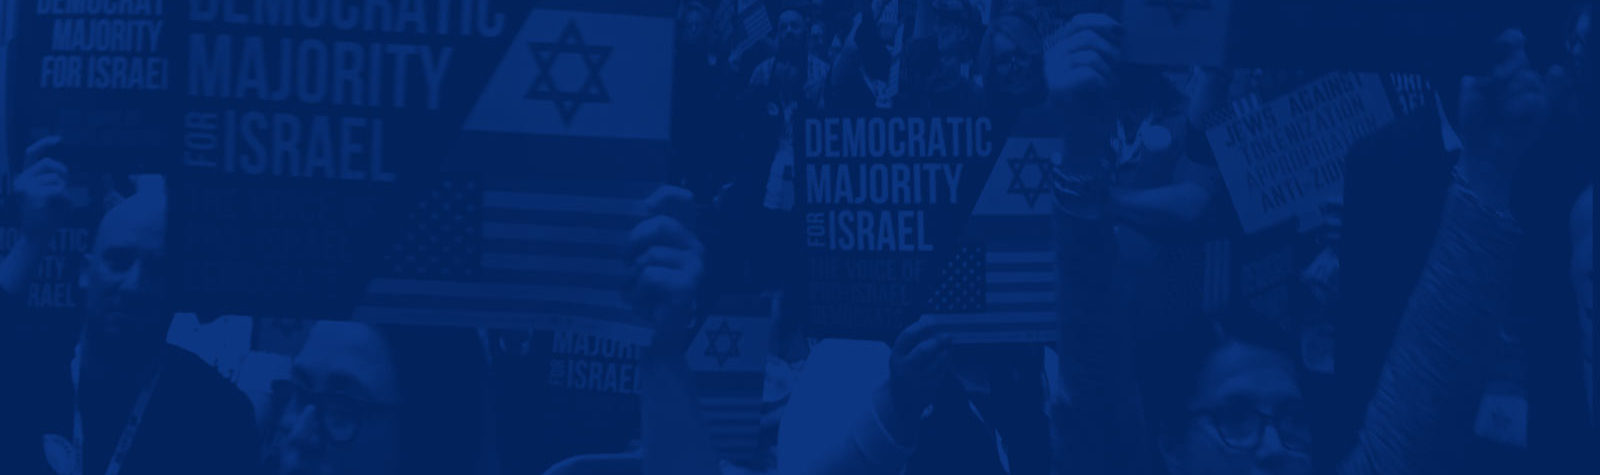 New York Jewish Week: Democrats Seek ‘Leverage’ Against Annexation